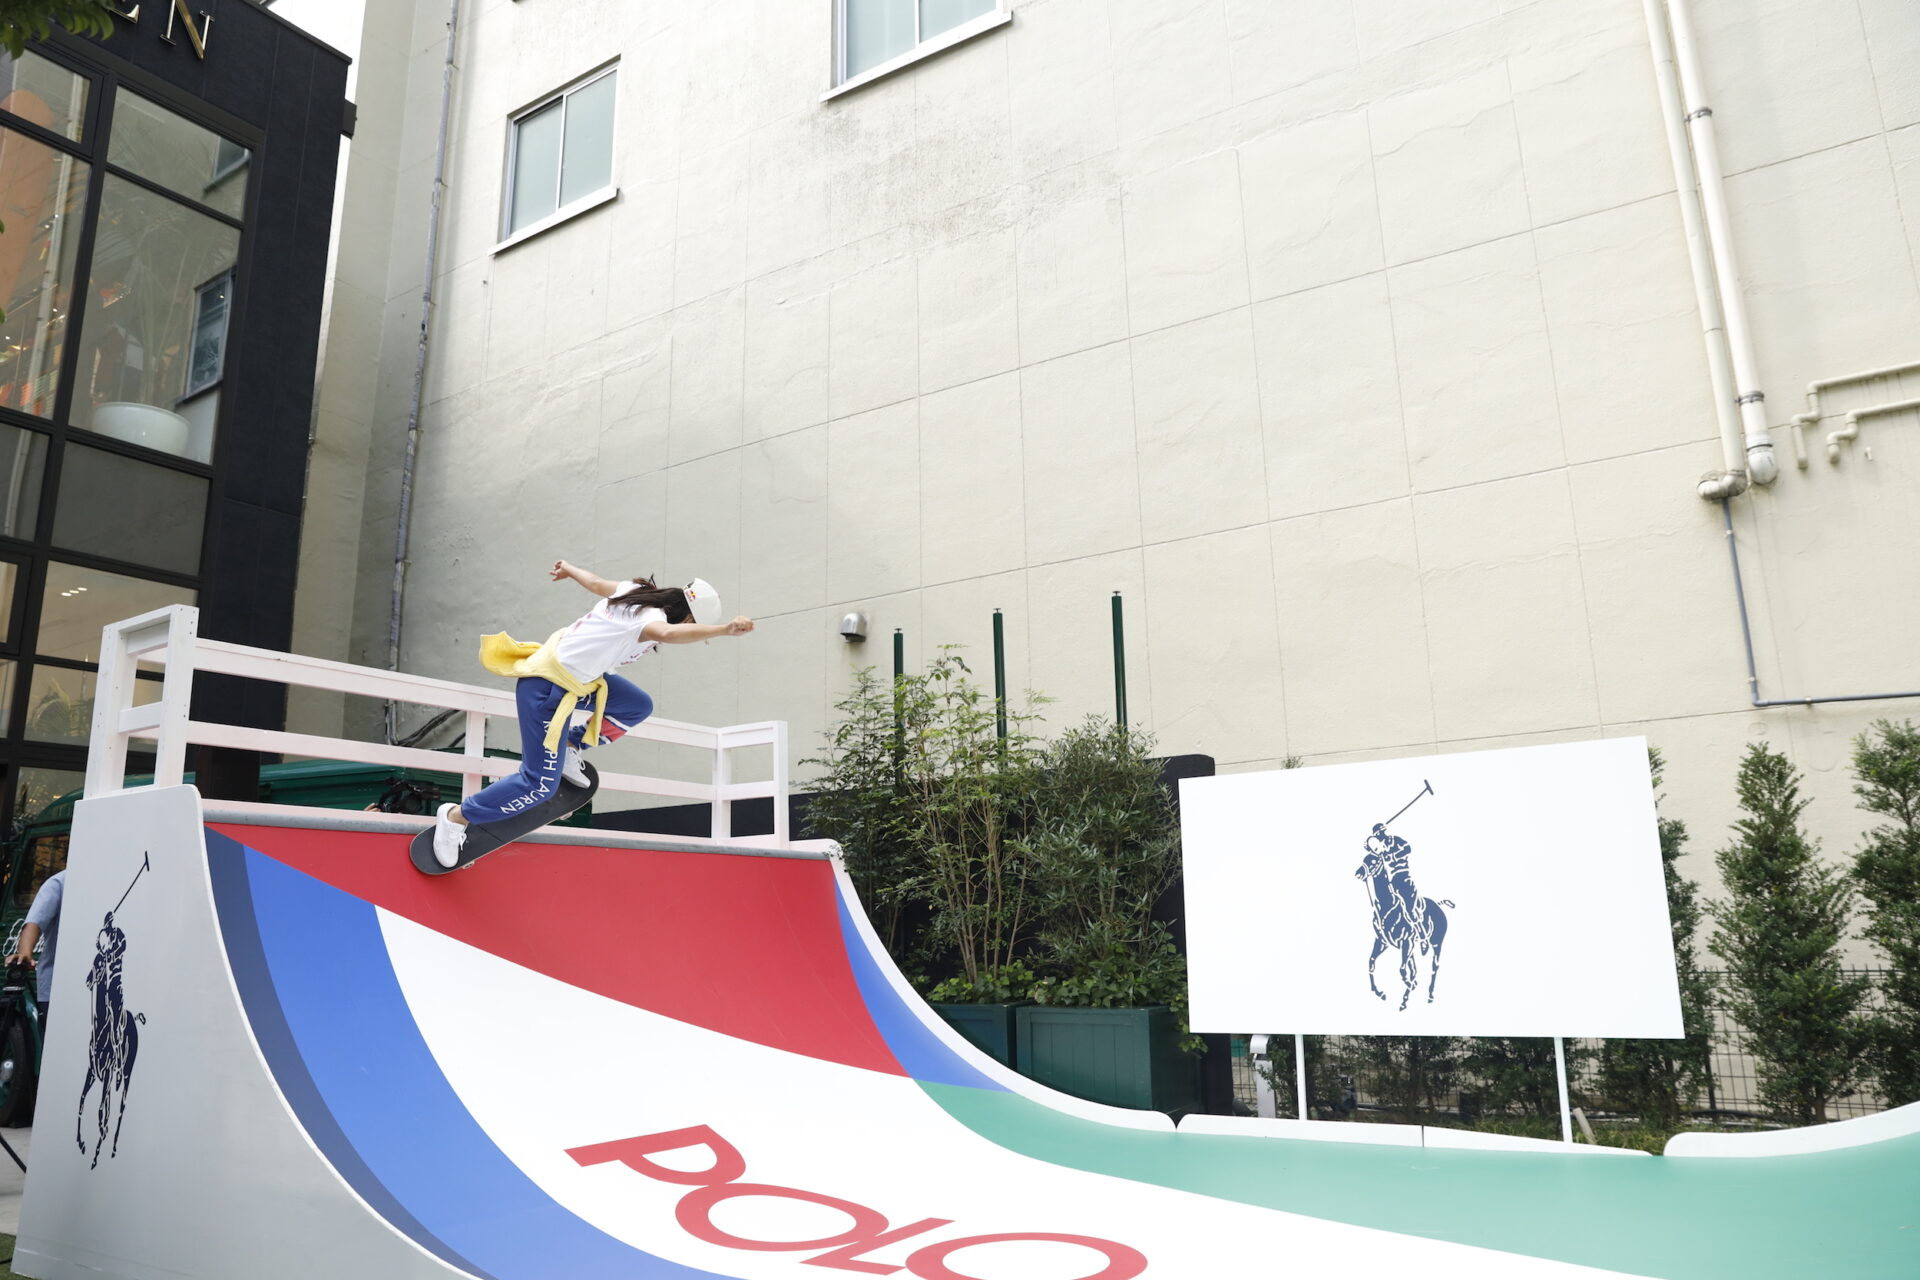 スケートボード金メダルの四十住さくらが「ラルフ ローレン 銀座」のイベントに登場 五輪後に初滑りを披露 - TOKION